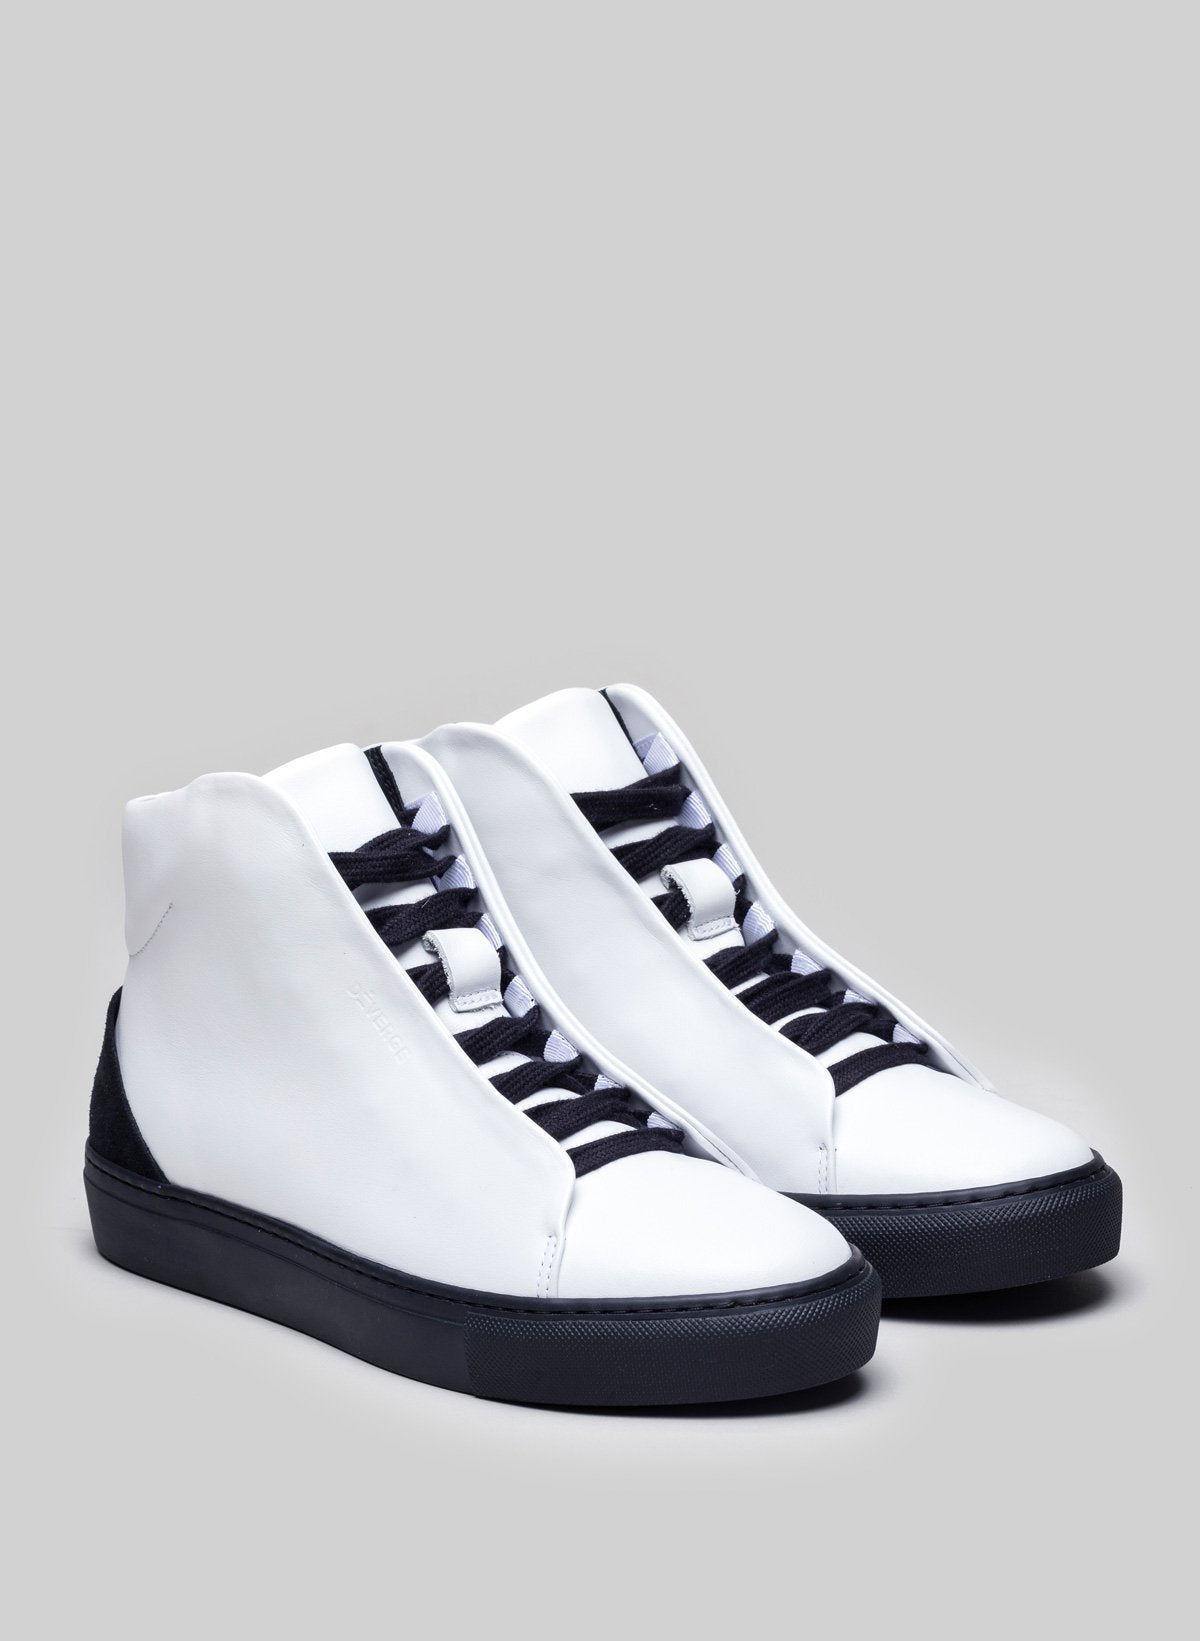 High top blanco sneakers con suelas y cordones negros, zapatos a medida de Diverge.